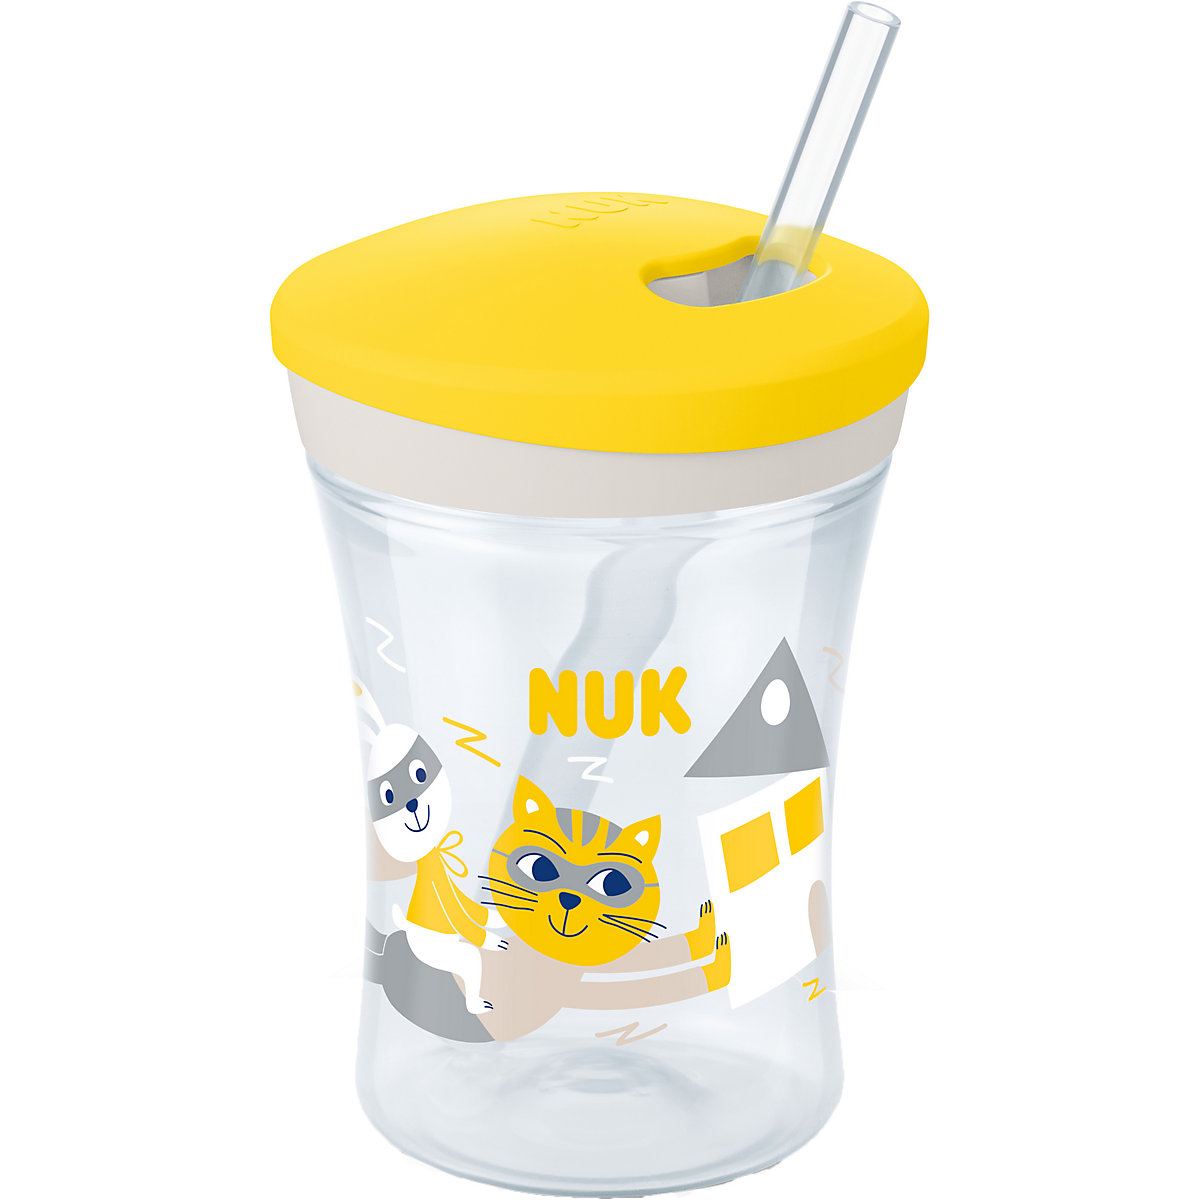 NUK Action Cup 230ml weicher Trinkhalm auslaufsicher ab 12 Monaten gelb